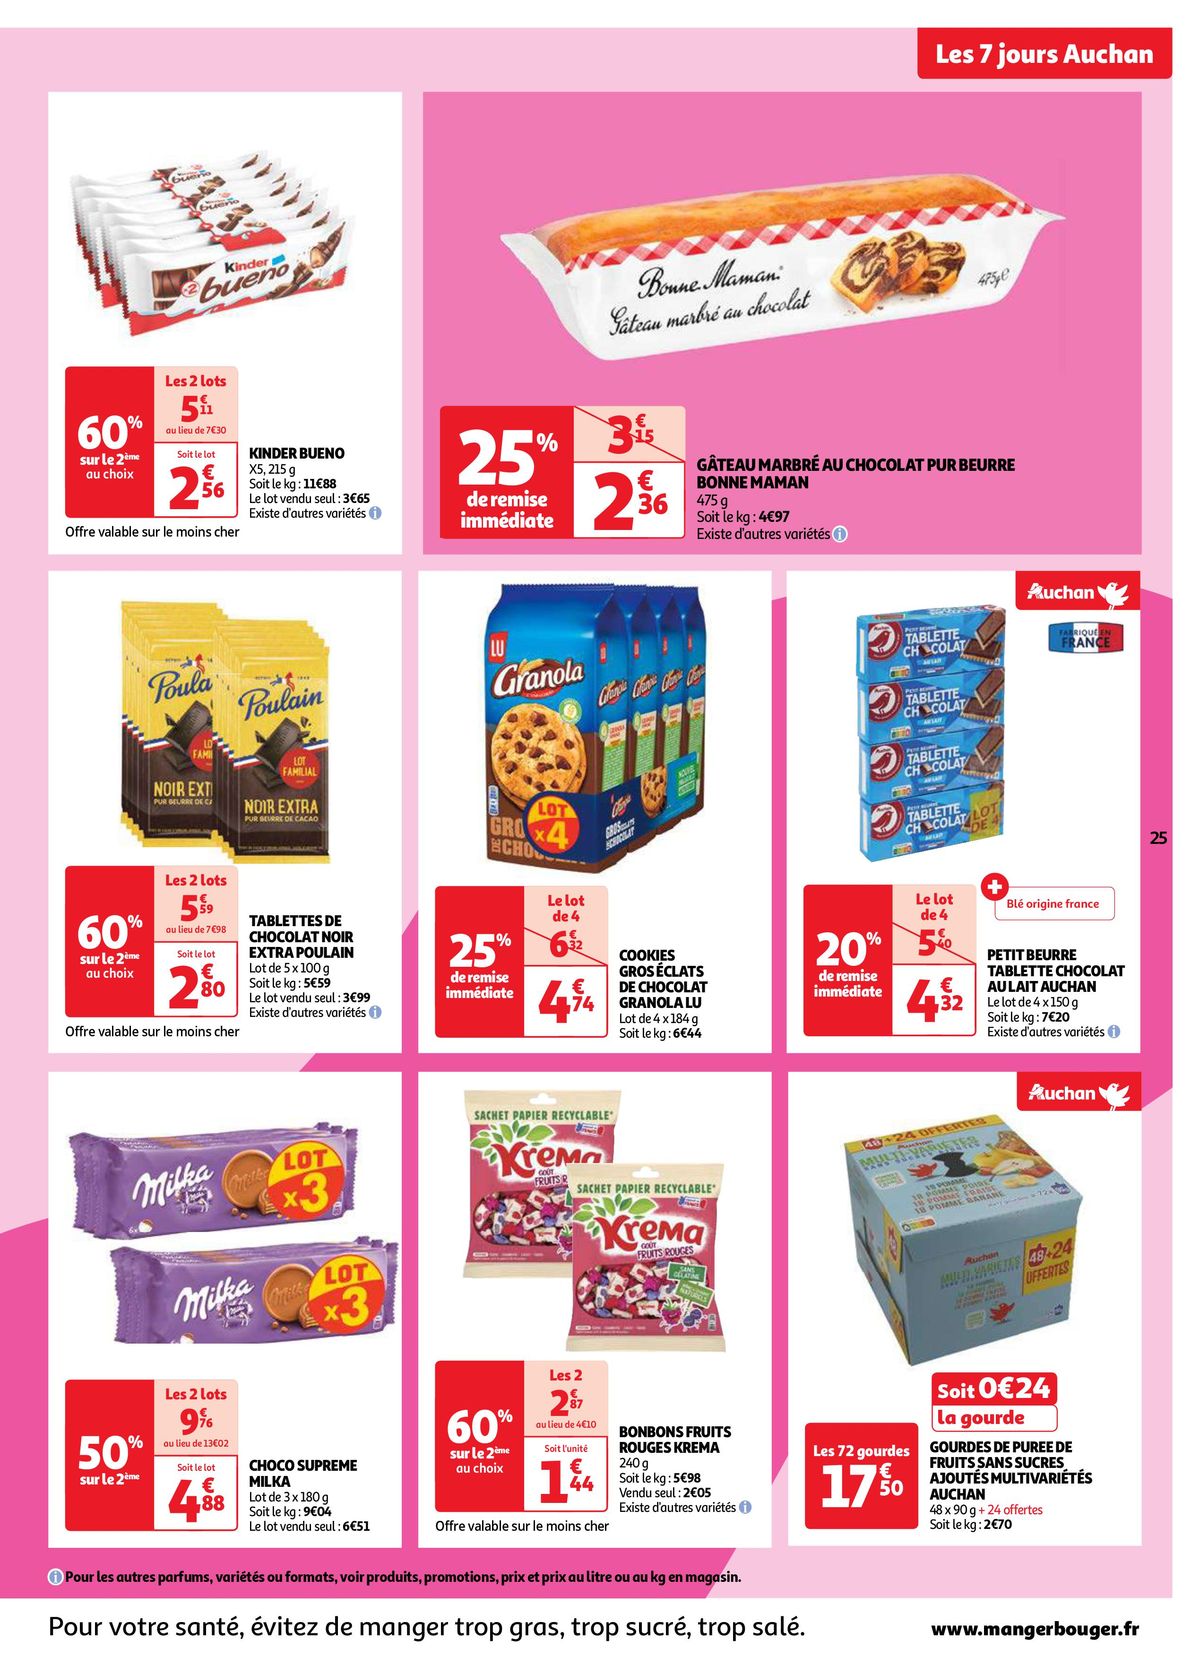 Catalogue Les 7 jours Auchan, c'est maintenant !, page 00025